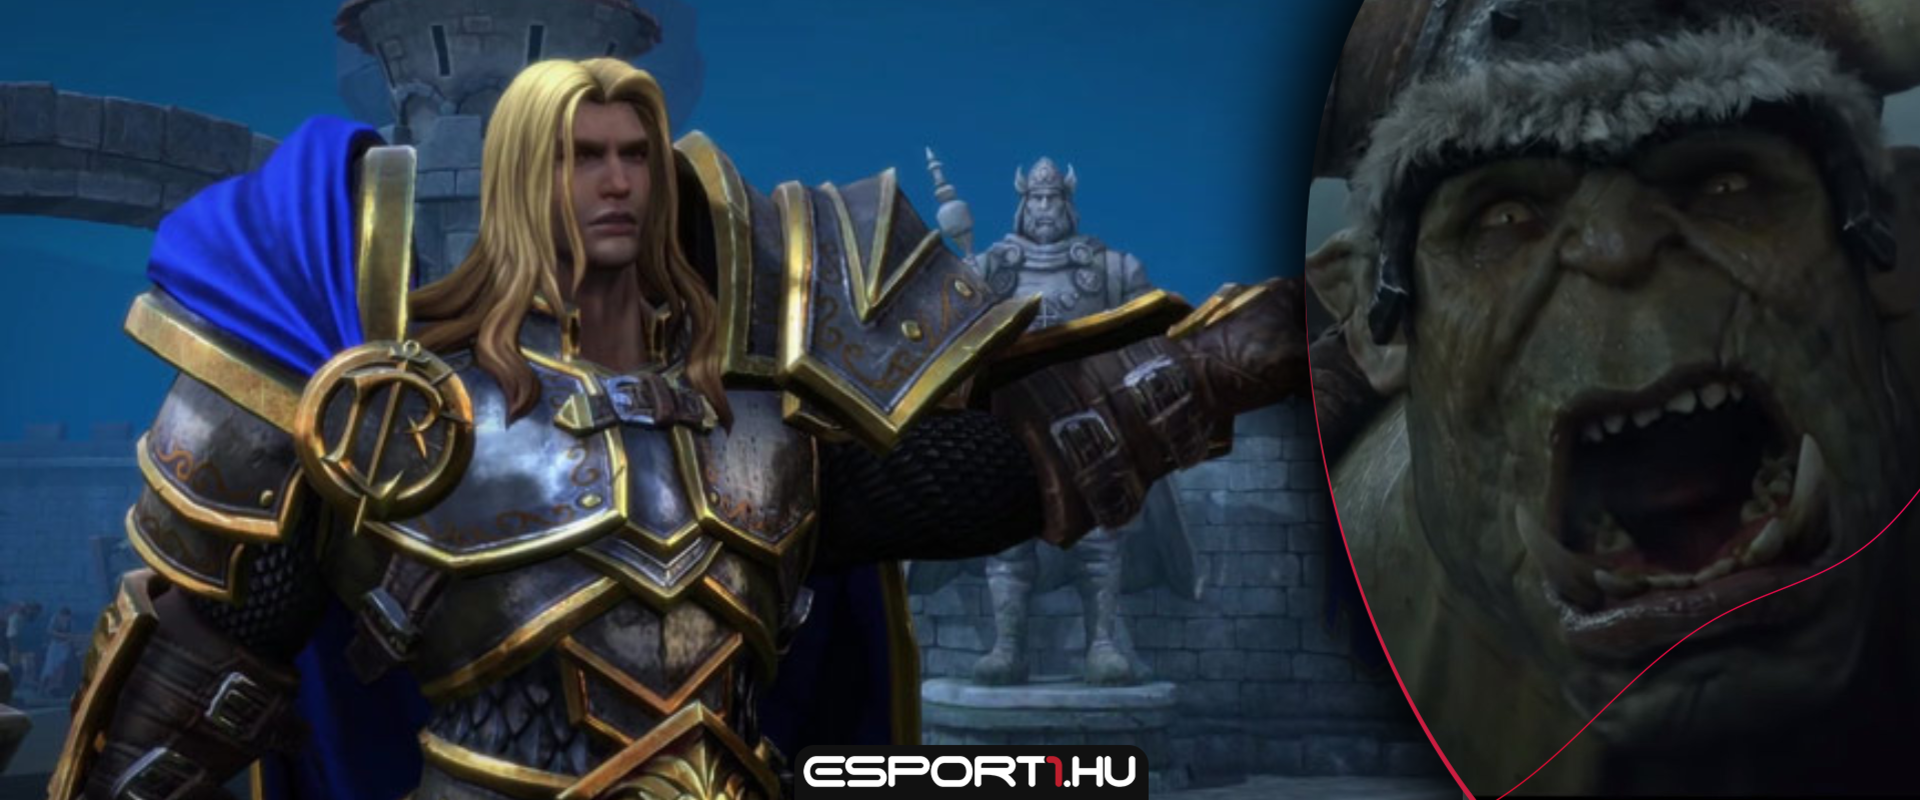 Refund vagy sem? Csalódás és panaszáradat a Blizzard ellen a Warcraft 3: Reforged miatt!